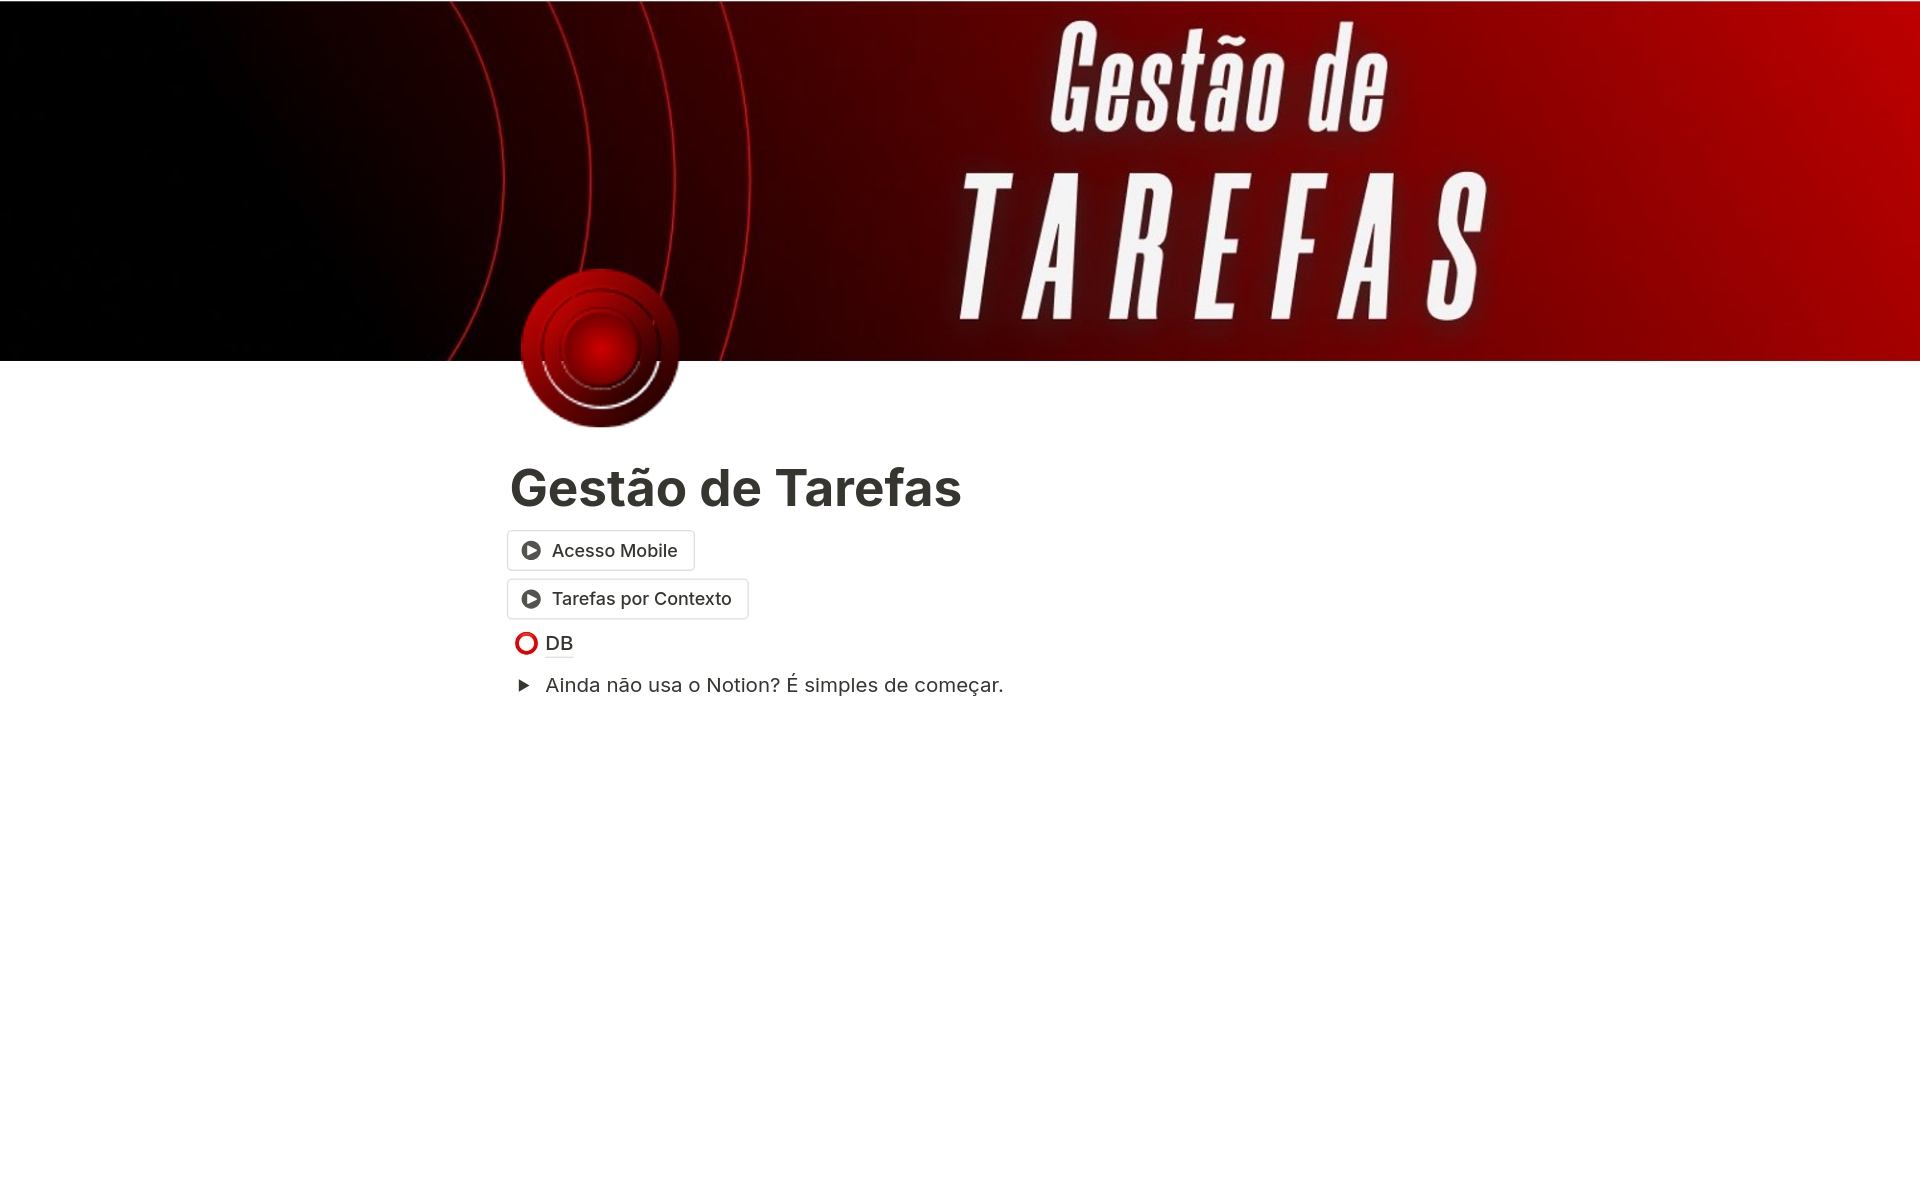 A template preview for Gestão de Tarefas